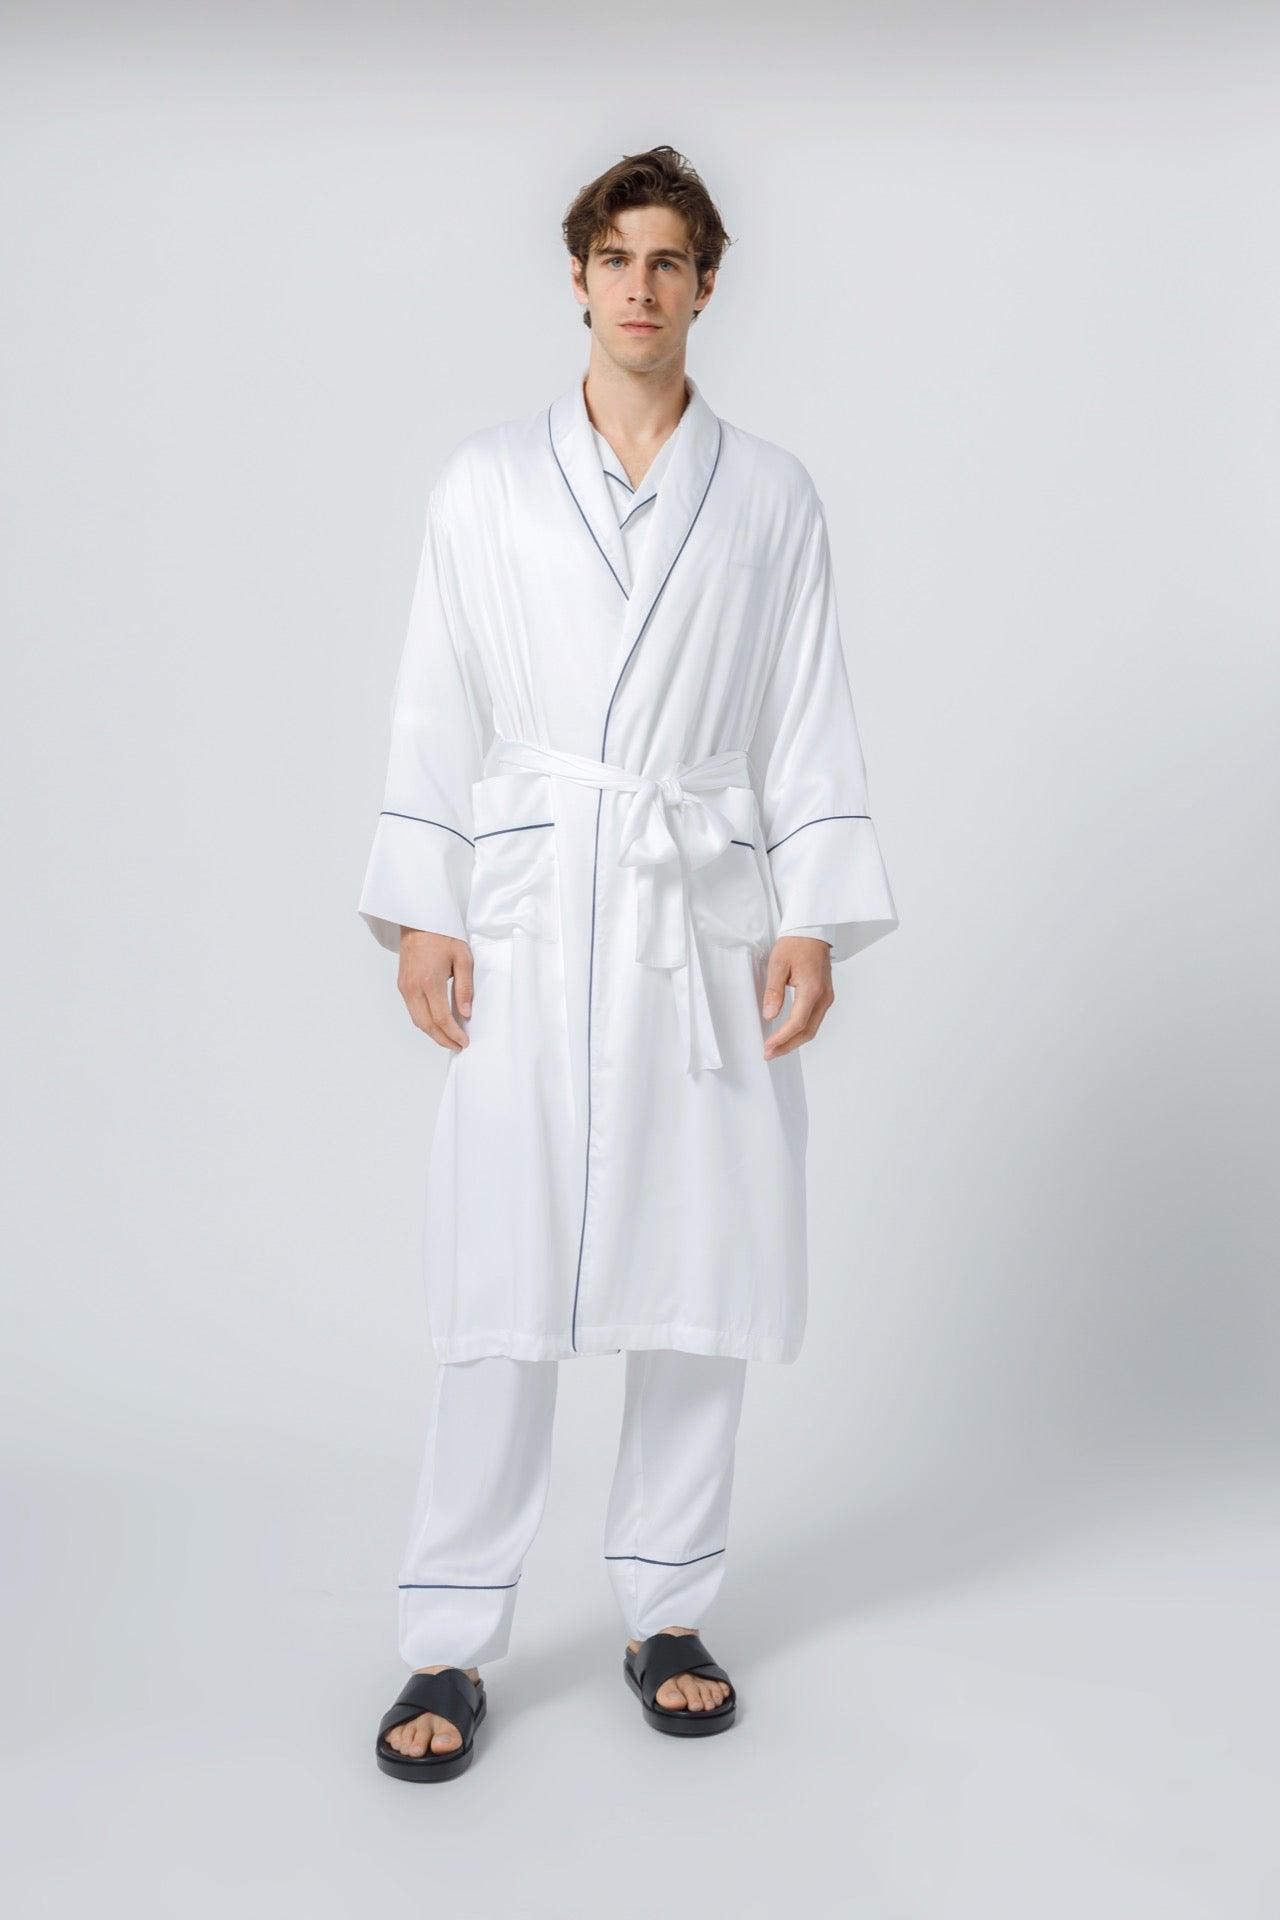 Comfort  Robe White